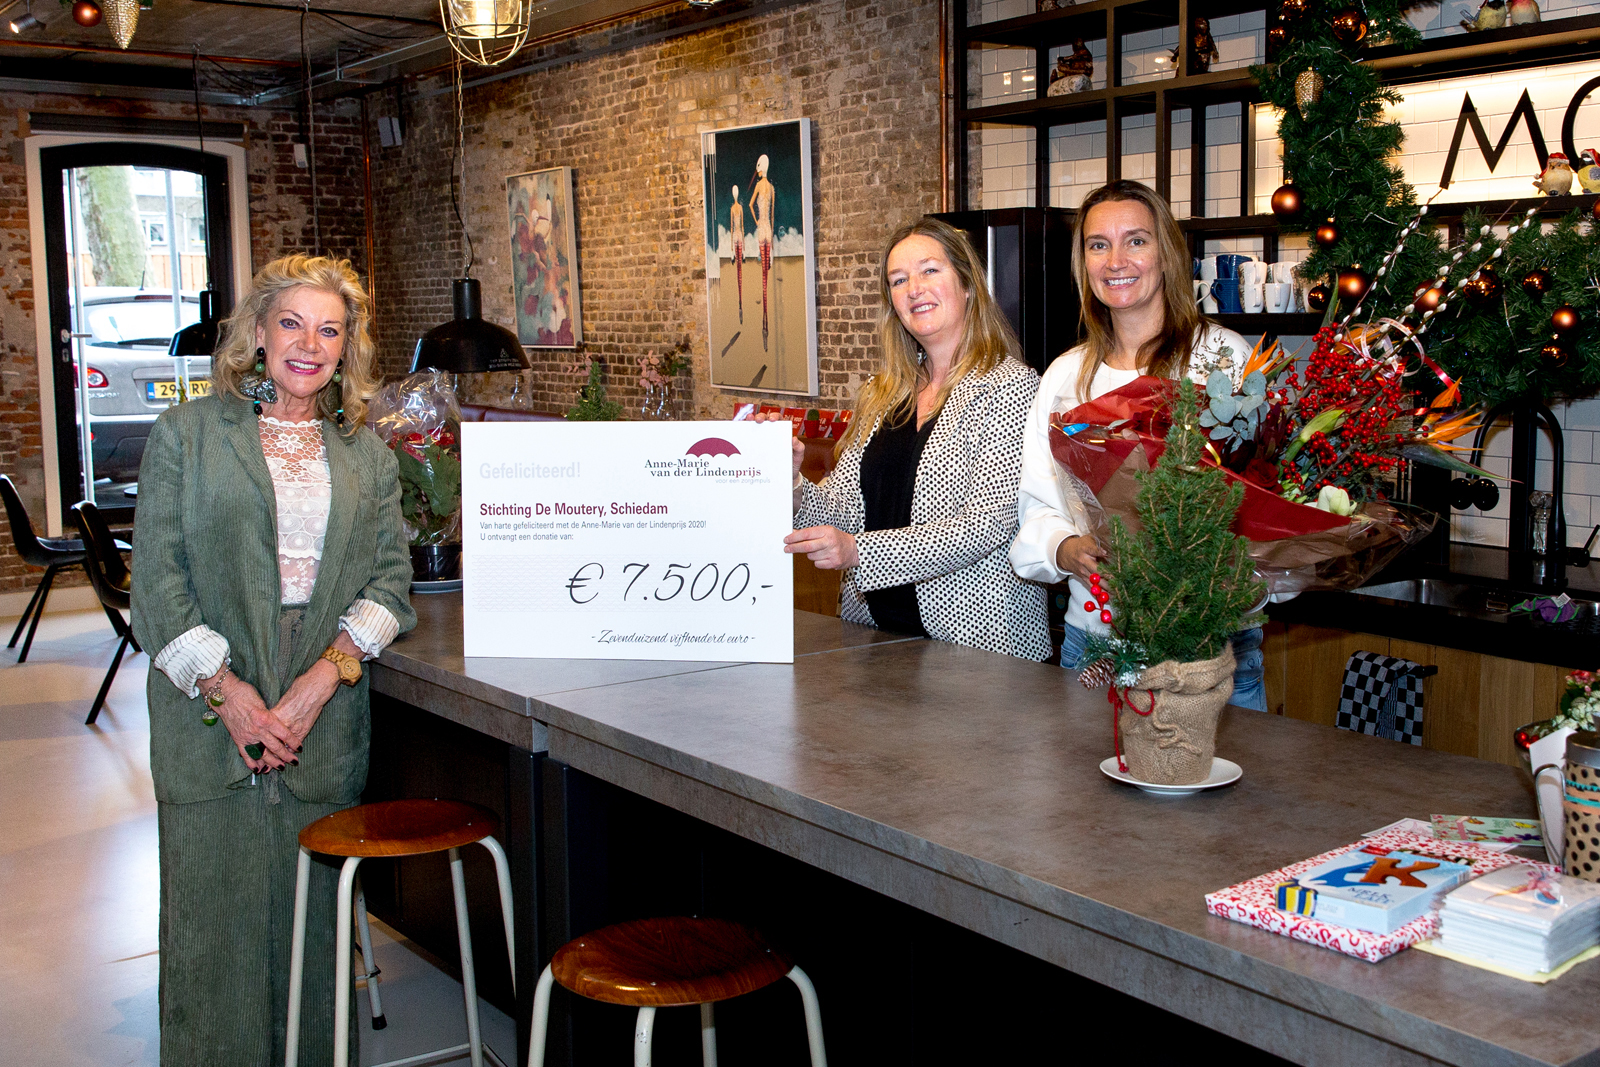 Stichting De Moutery uit Schiedam kreeg eveneens een mooie bos bloemen en een cheque met een symbolisch bedrag van € 7.500,-